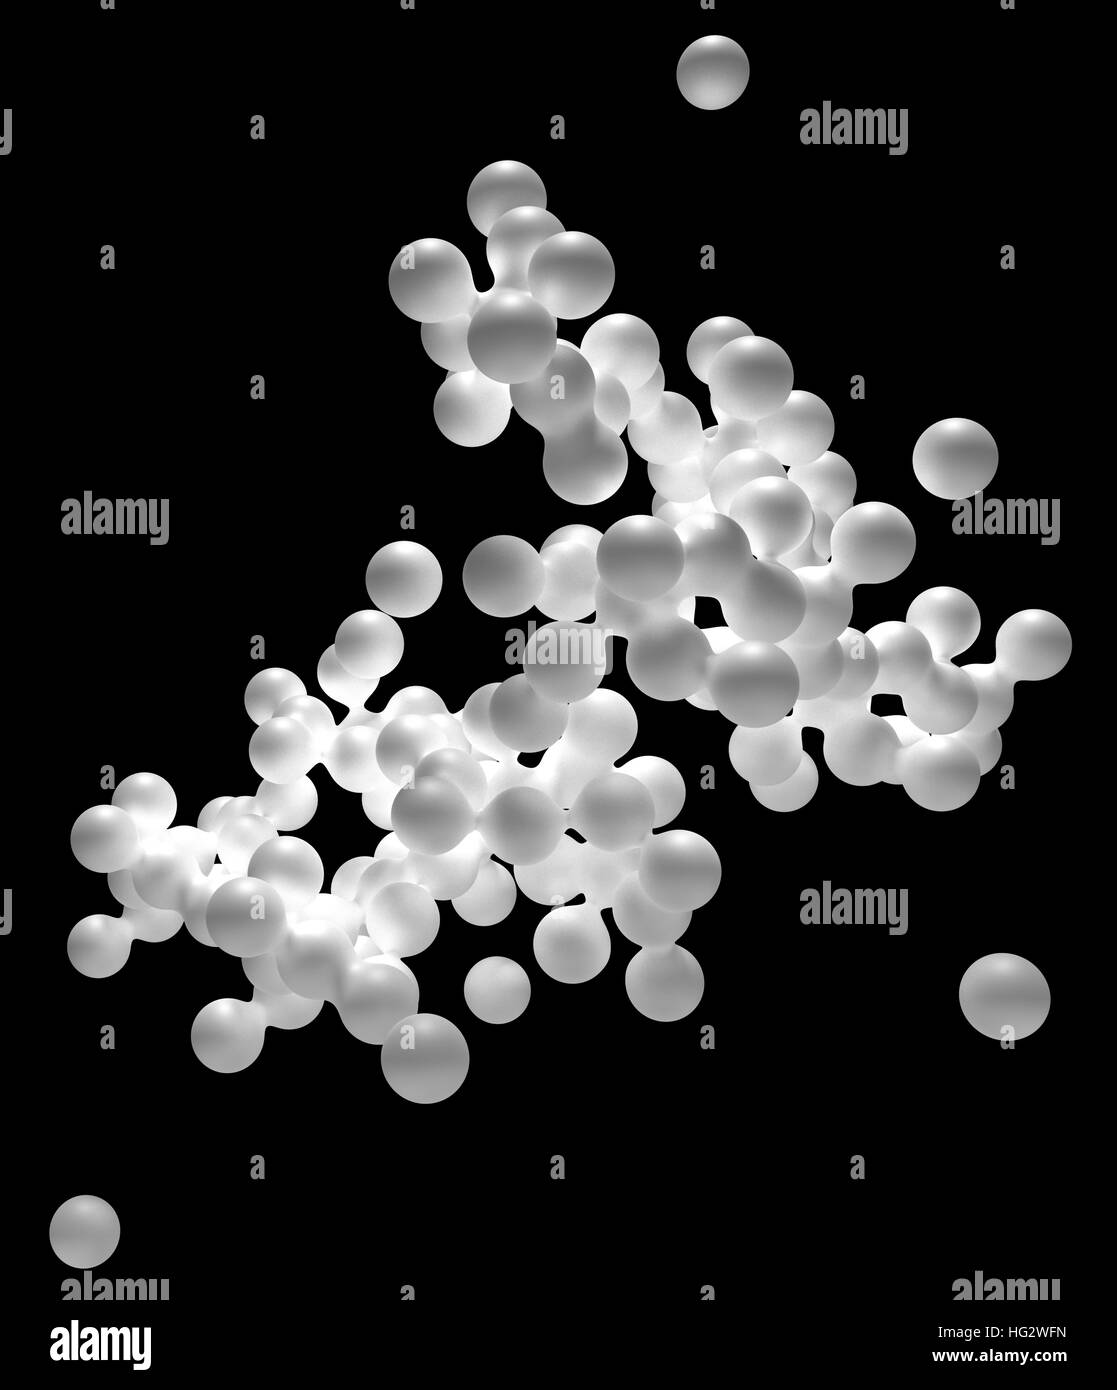 Zusammenfassung des chaotischen weißen blobs Stockfoto